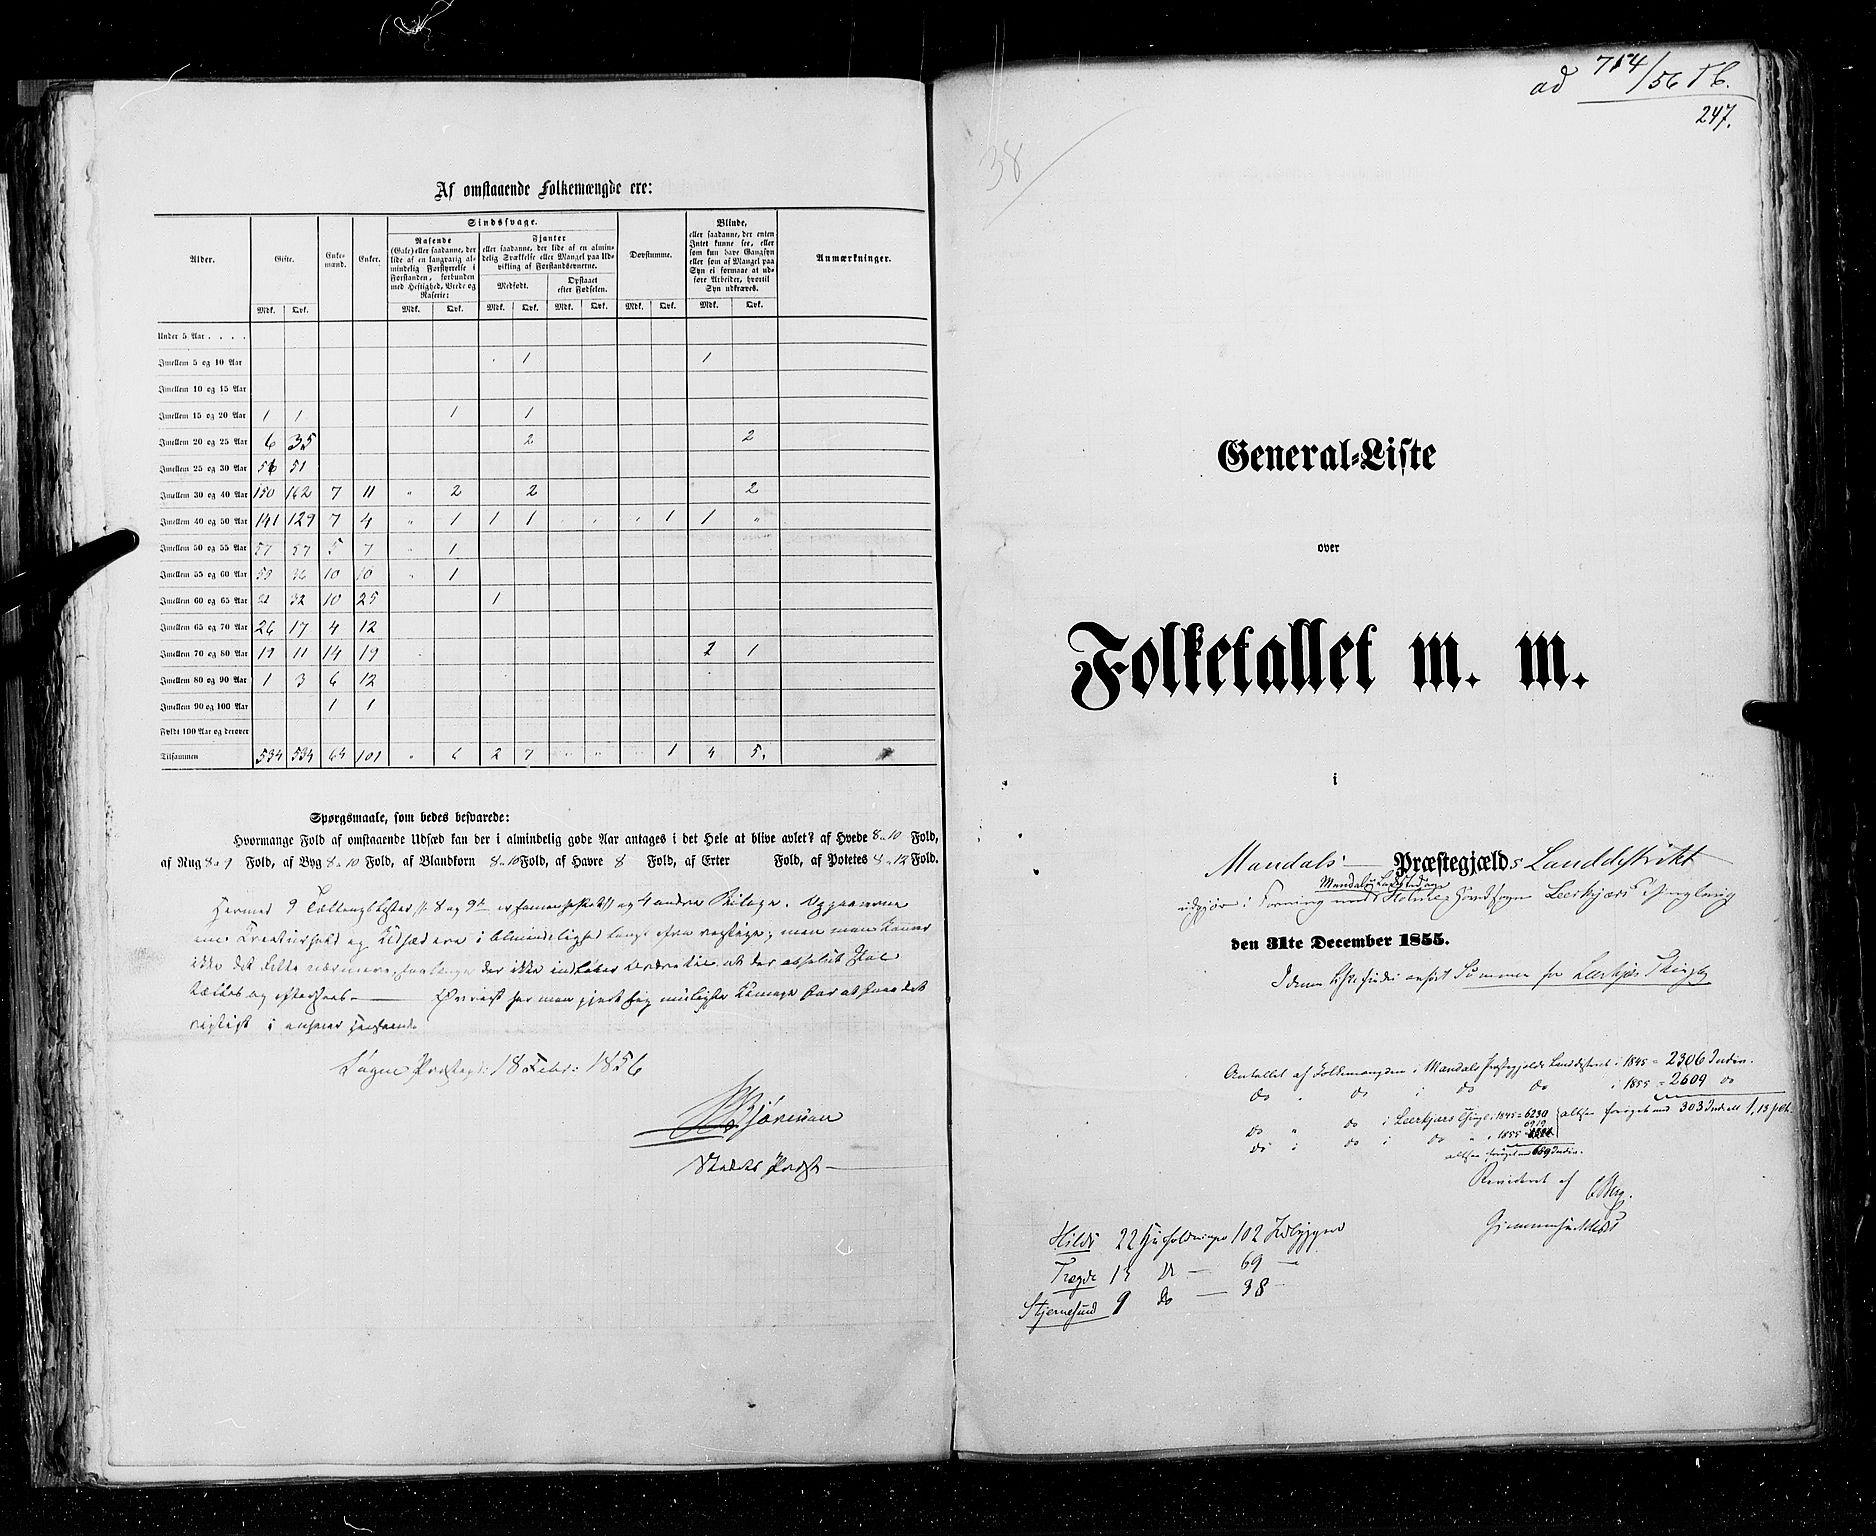 RA, Census 1855, vol. 3: Bratsberg amt, Nedenes amt og Lister og Mandal amt, 1855, p. 247